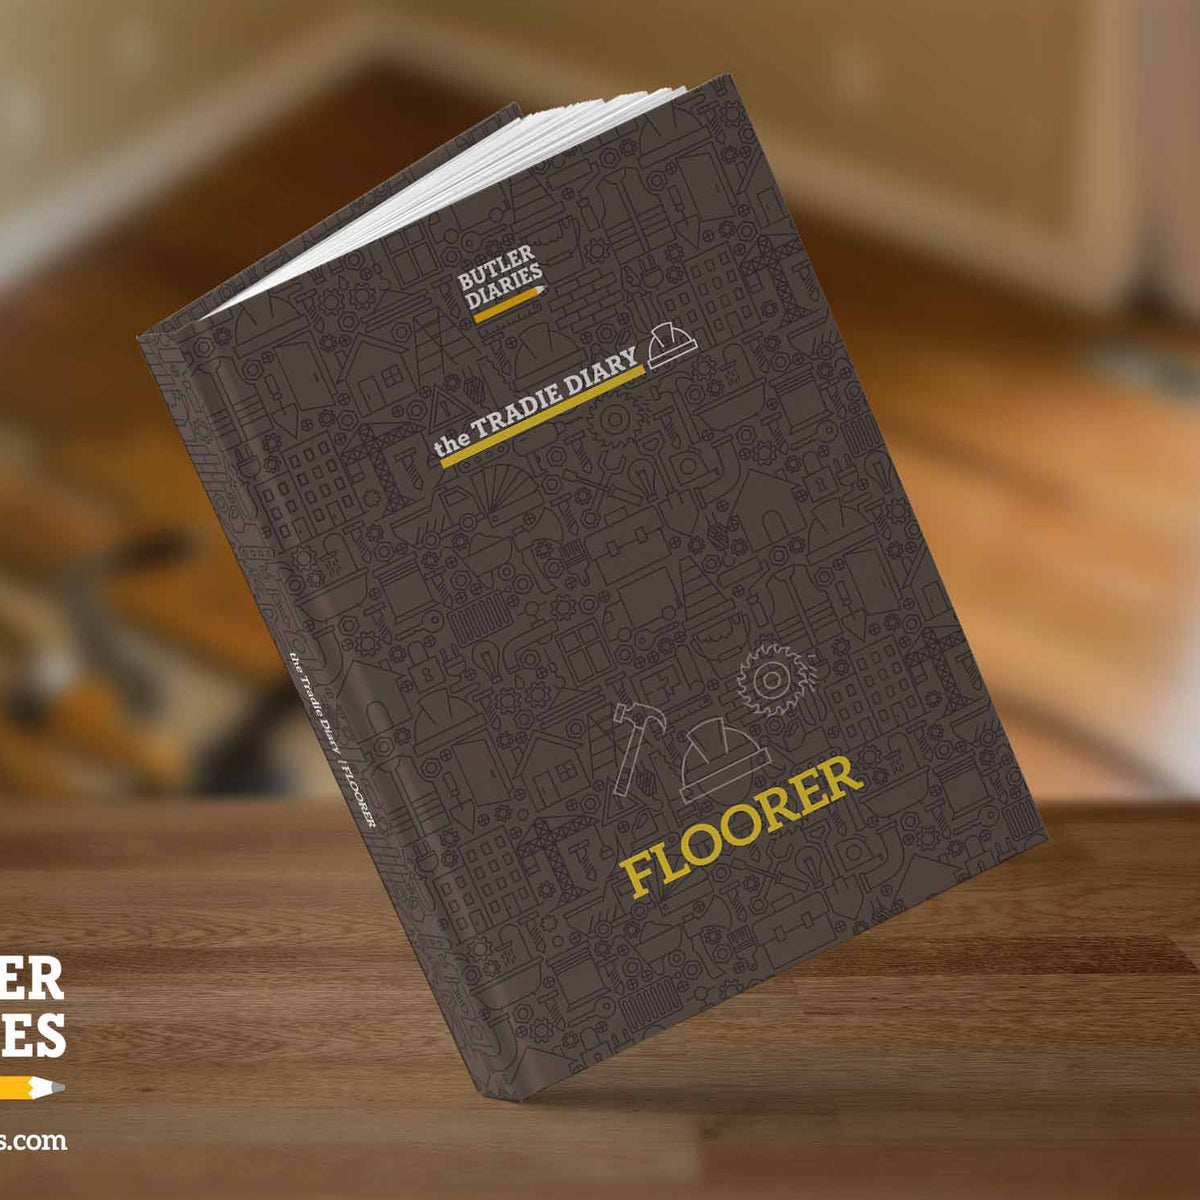 2023 The Tradie Diary: FLOORER - Butler Diaries